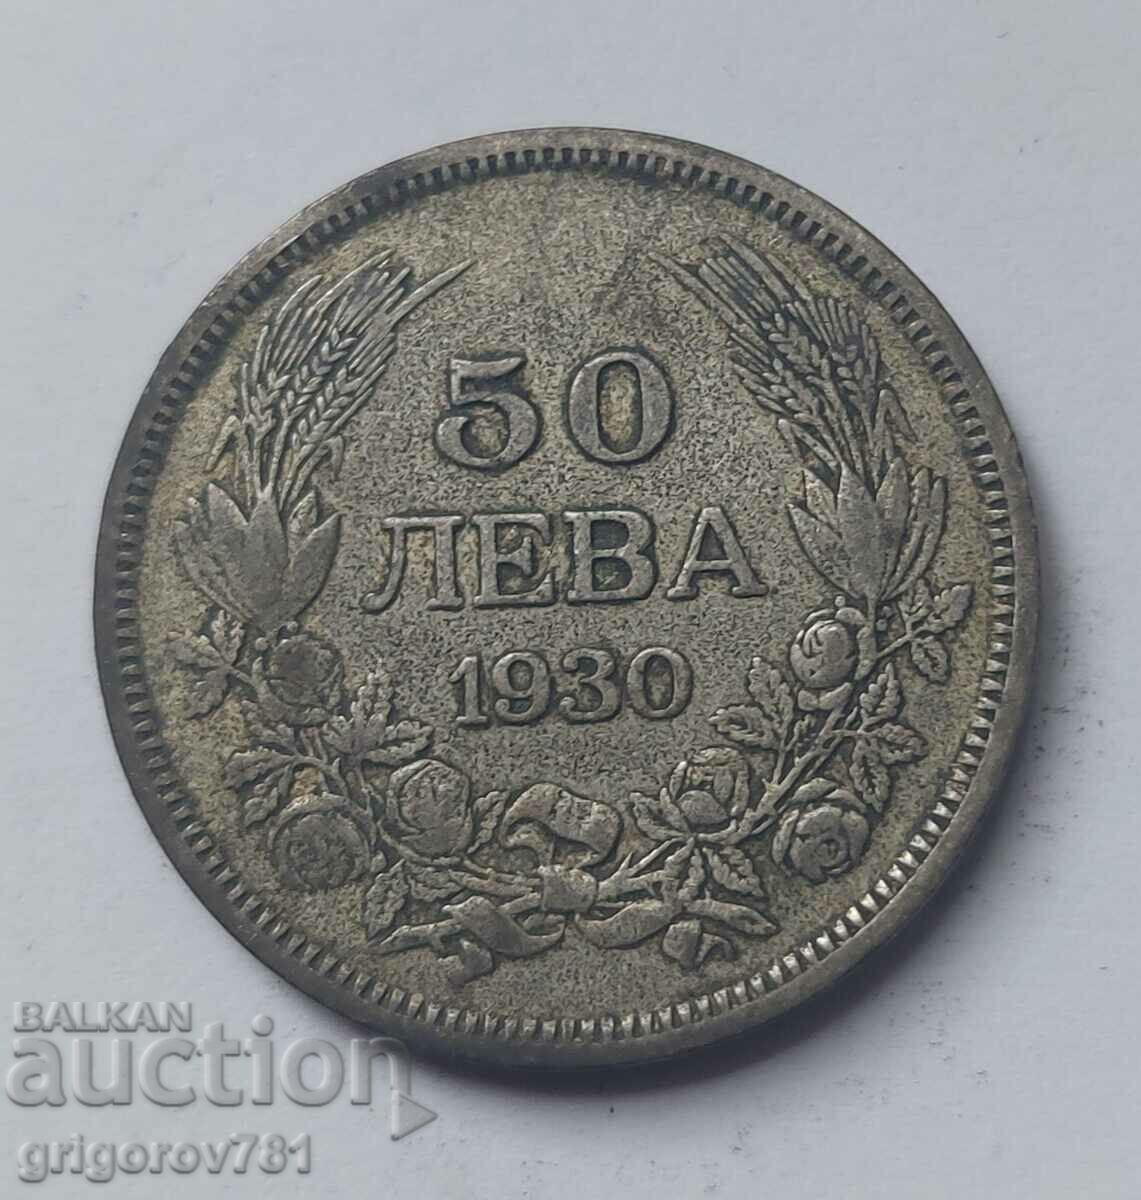 Ασήμι 50 λέβα Βουλγαρία 1930 - ασημένιο νόμισμα #33